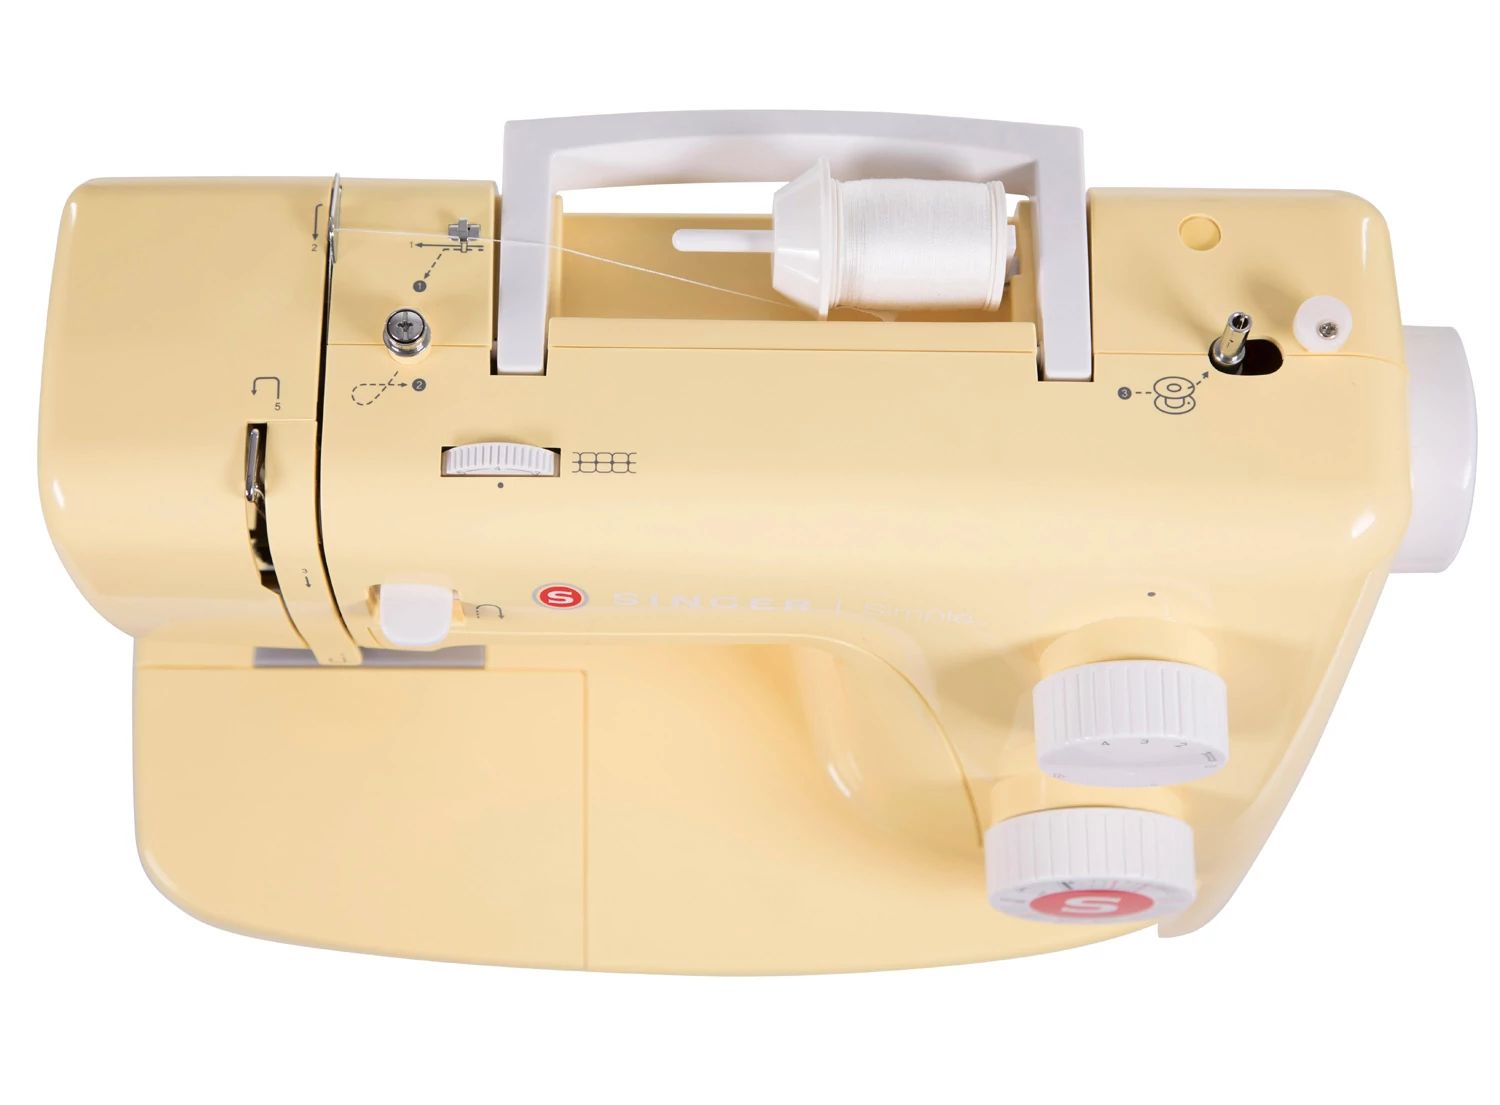 Simple™ 3223Y Sewing Machine